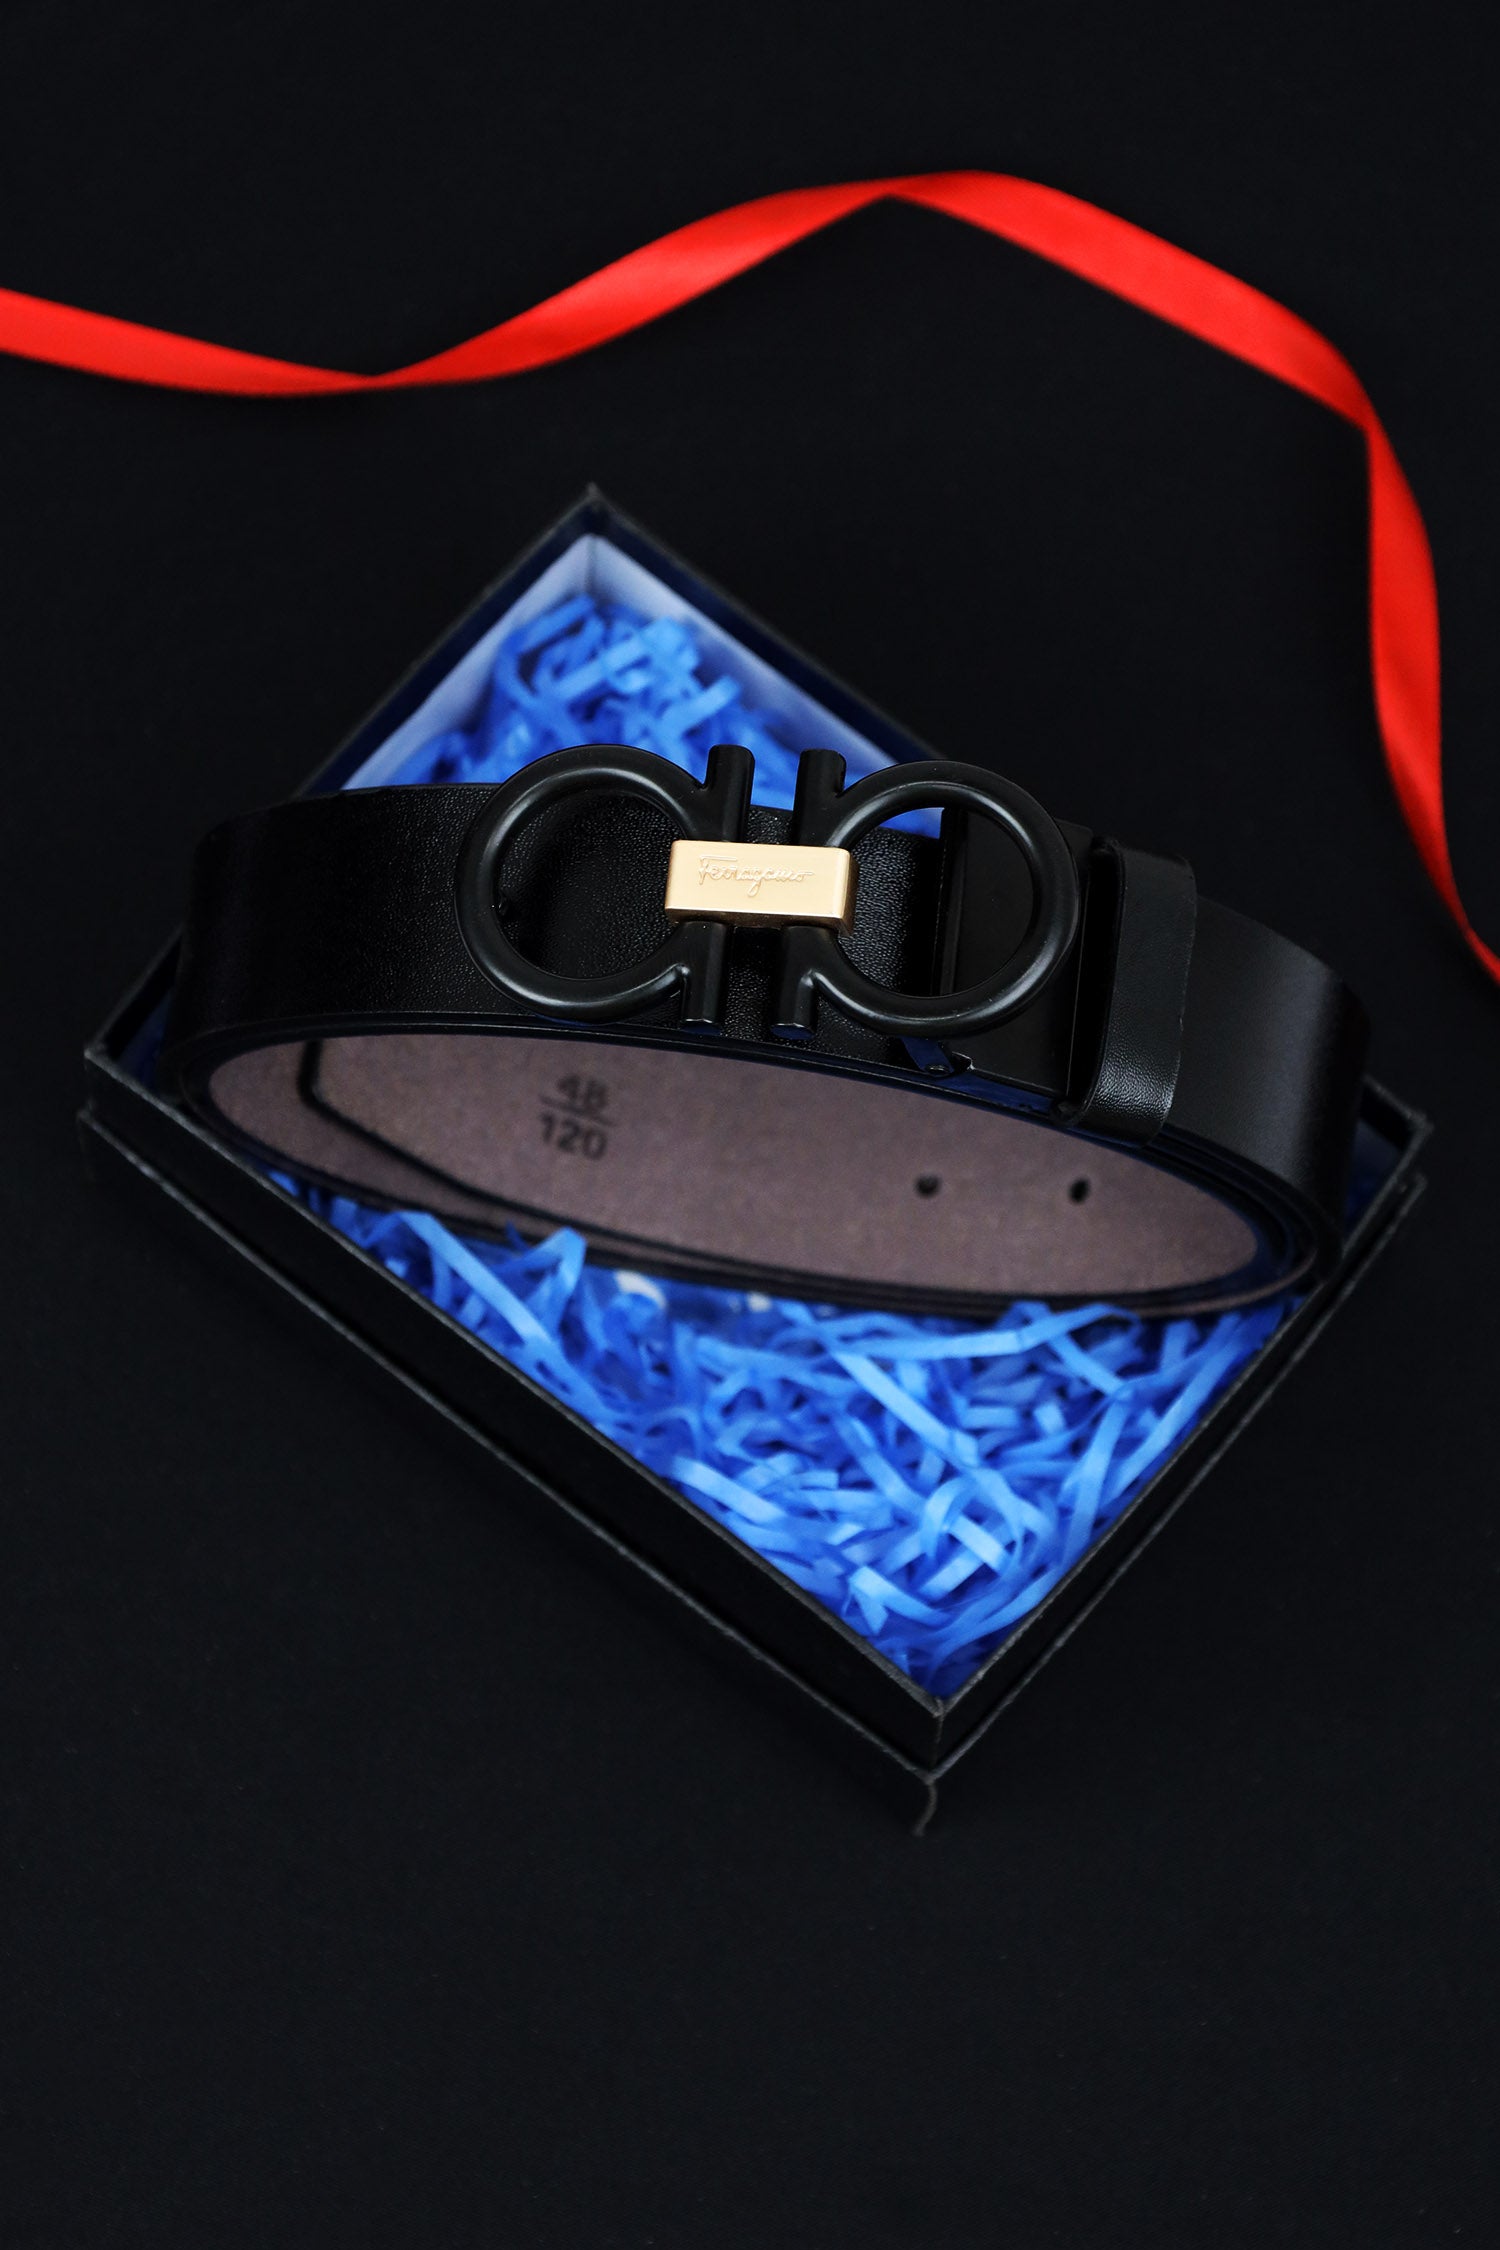 Feragmo Metal Alloy Automatic Buckle Branded Belt